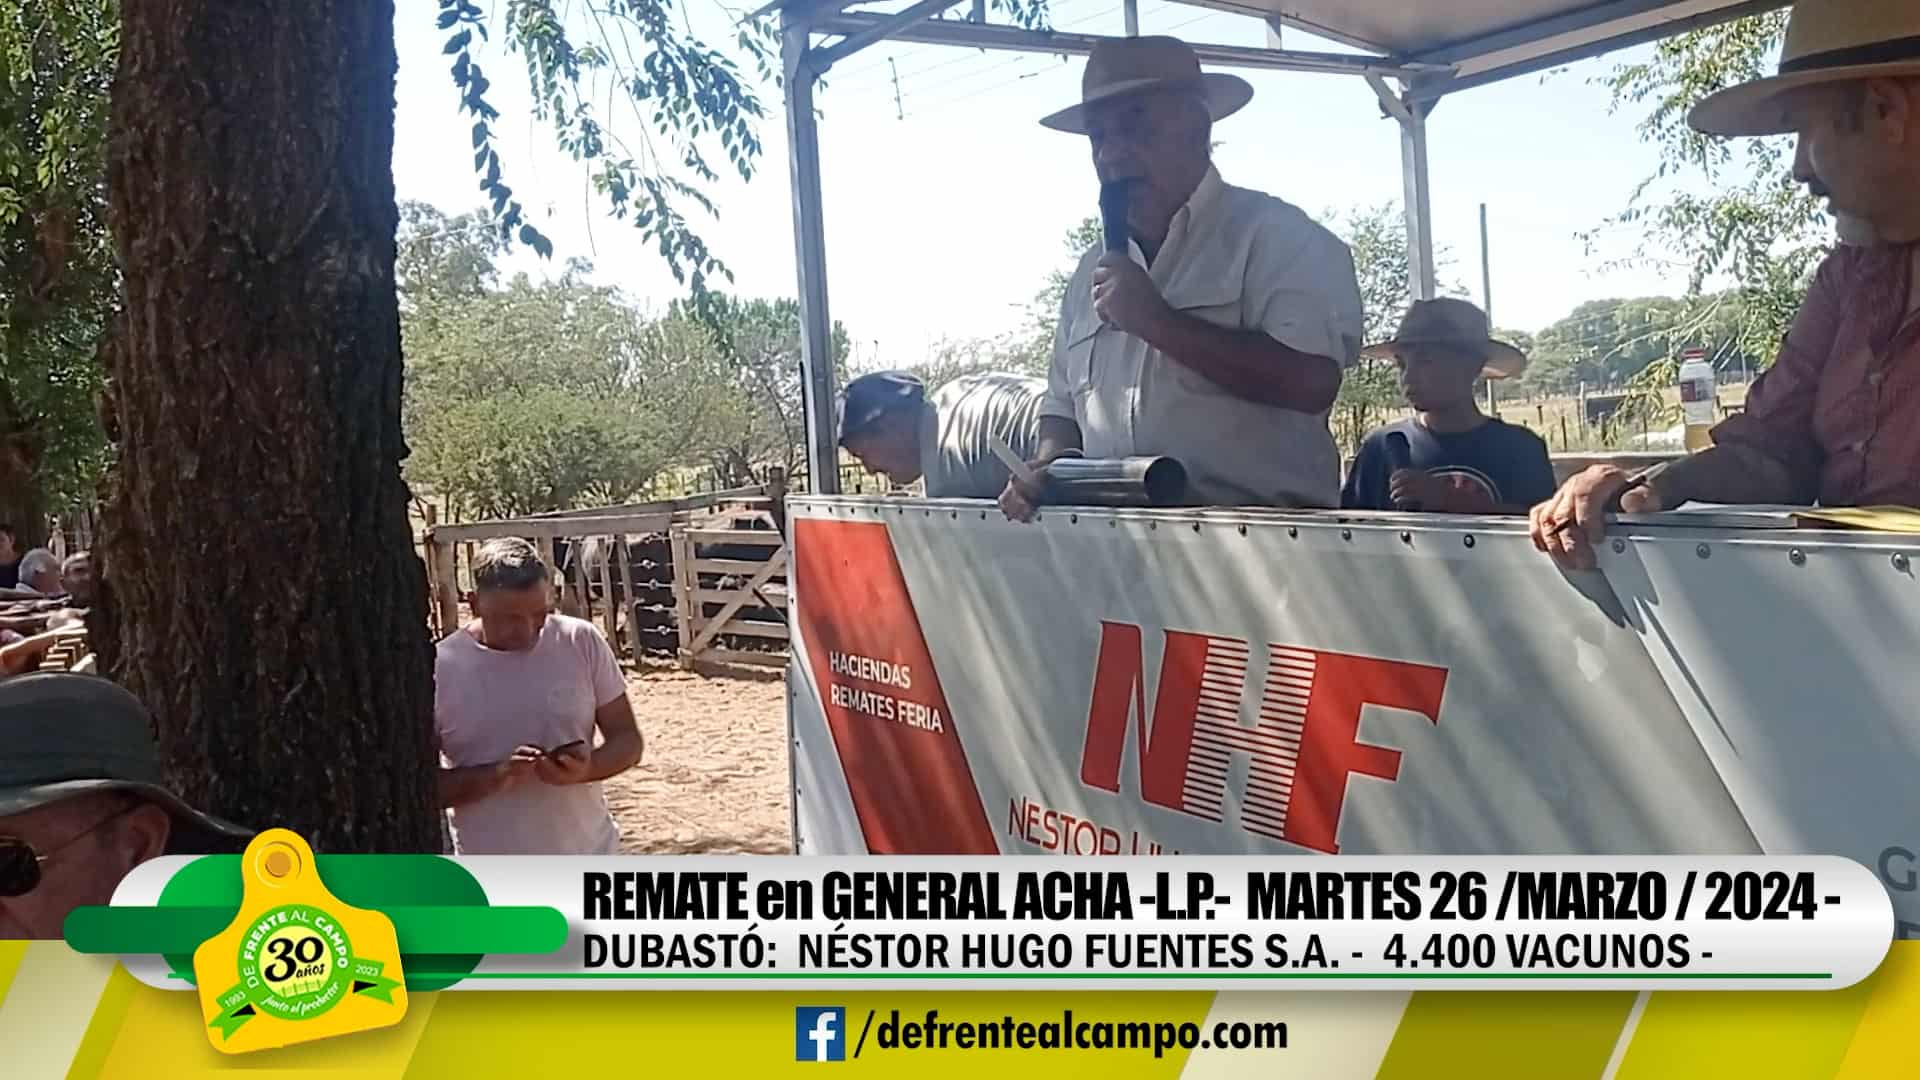 Remate Feria de Néstor Hugo Fuentes S.A. – General Acha – L.P. | 26-03-2024